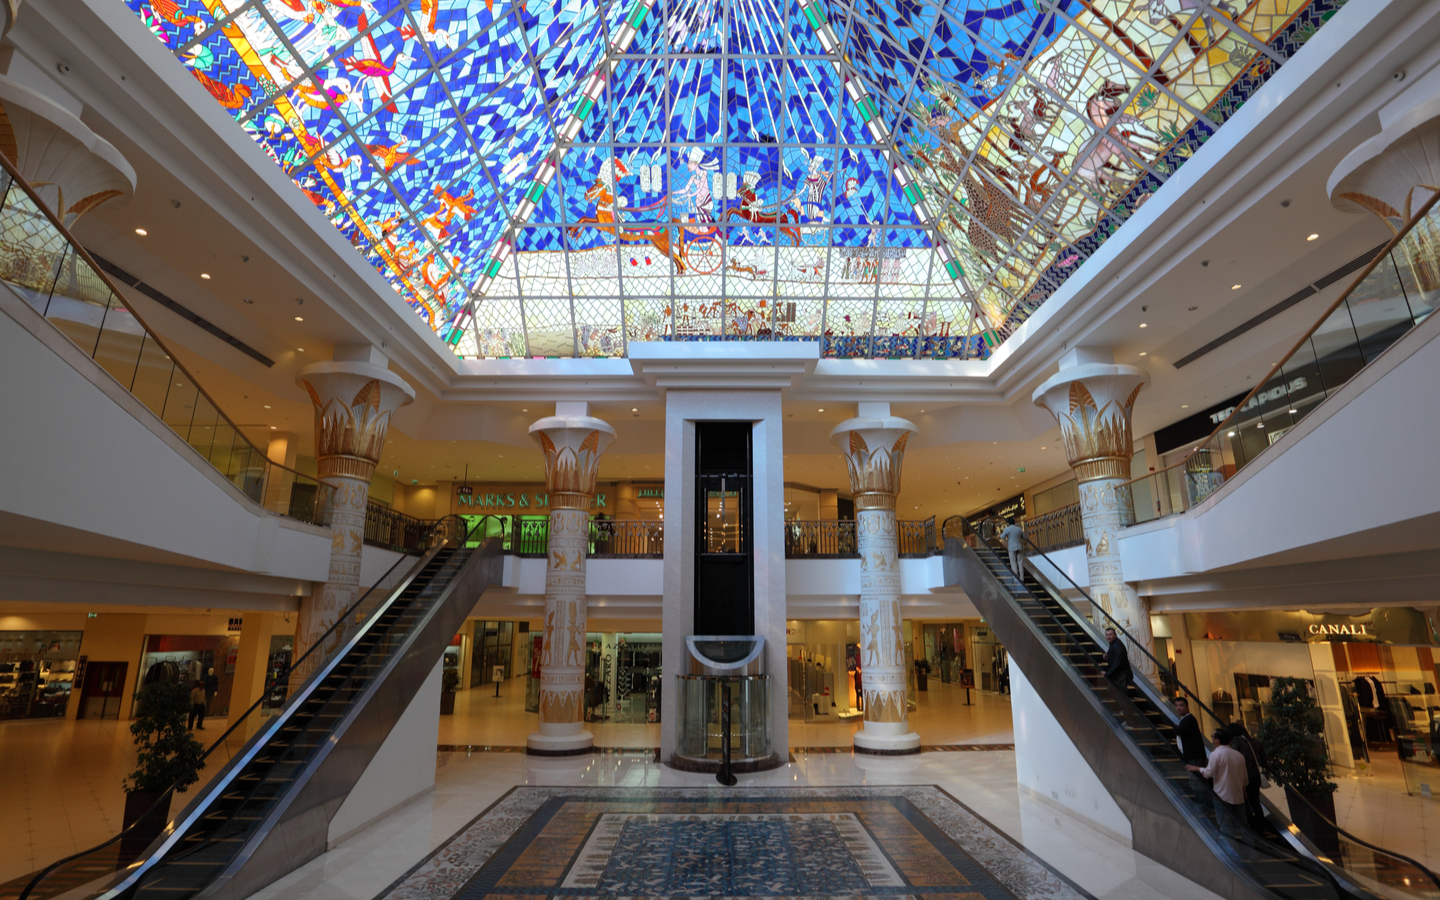 Top 10 Shopping Malls In Dubai: Dubai Mall, Mall of the Emirates & More